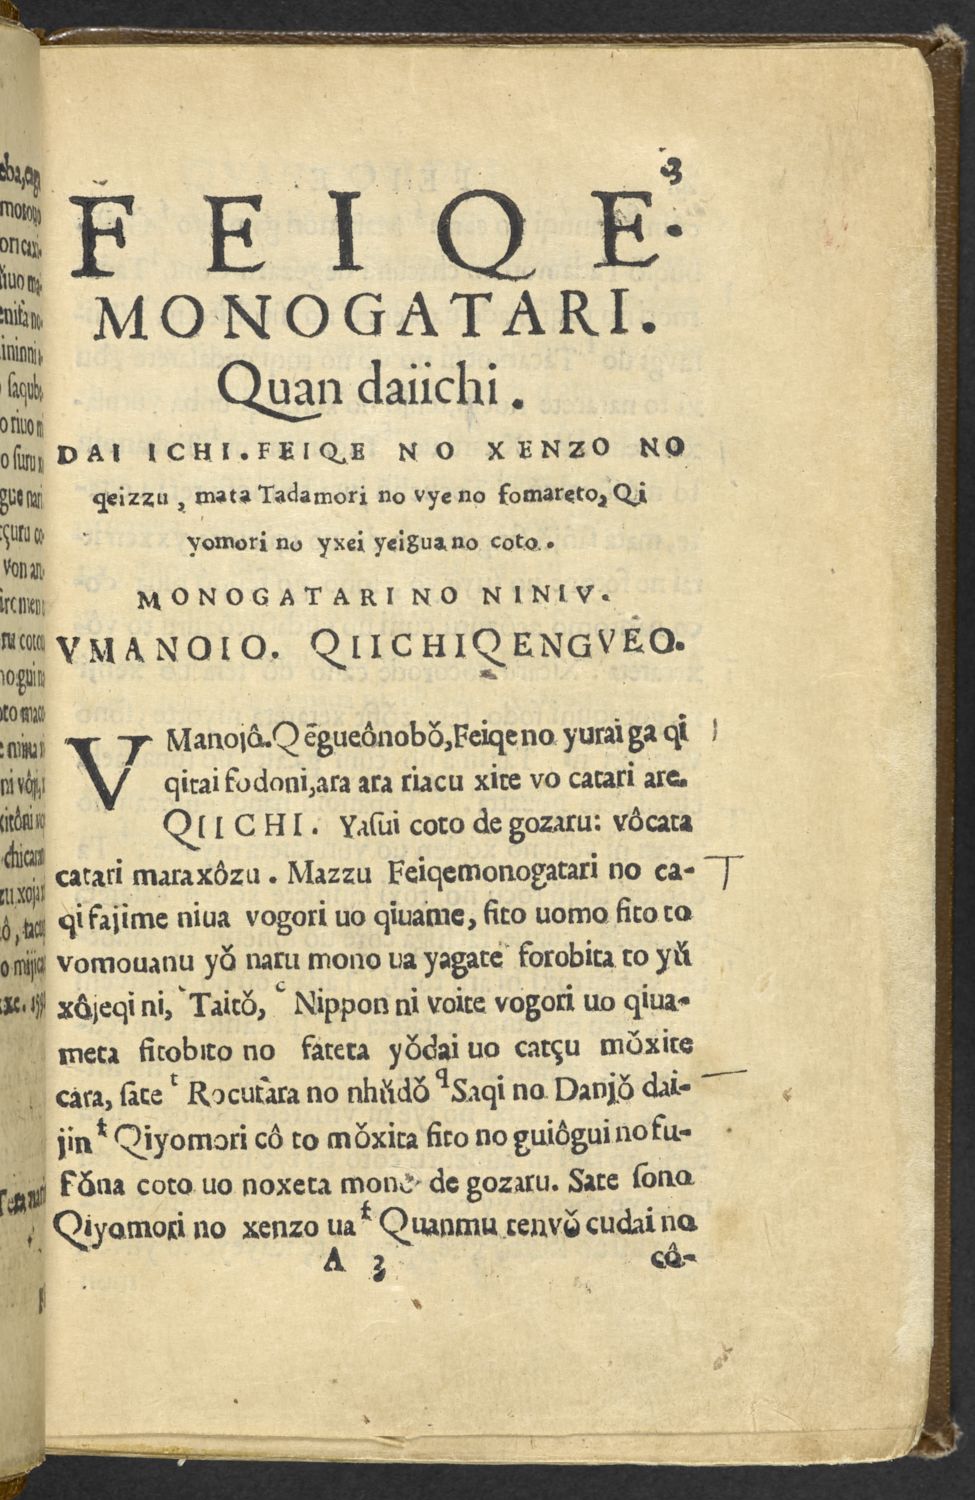 Une page du Heike monogatari (Le Dit des Heike), un classique de la littérature japonaise médiévale, écrit en rômaji de style portugais, imprimée à Amakusa entre 1592 et 1593 (avec l’aimable autorisation de la British Library).